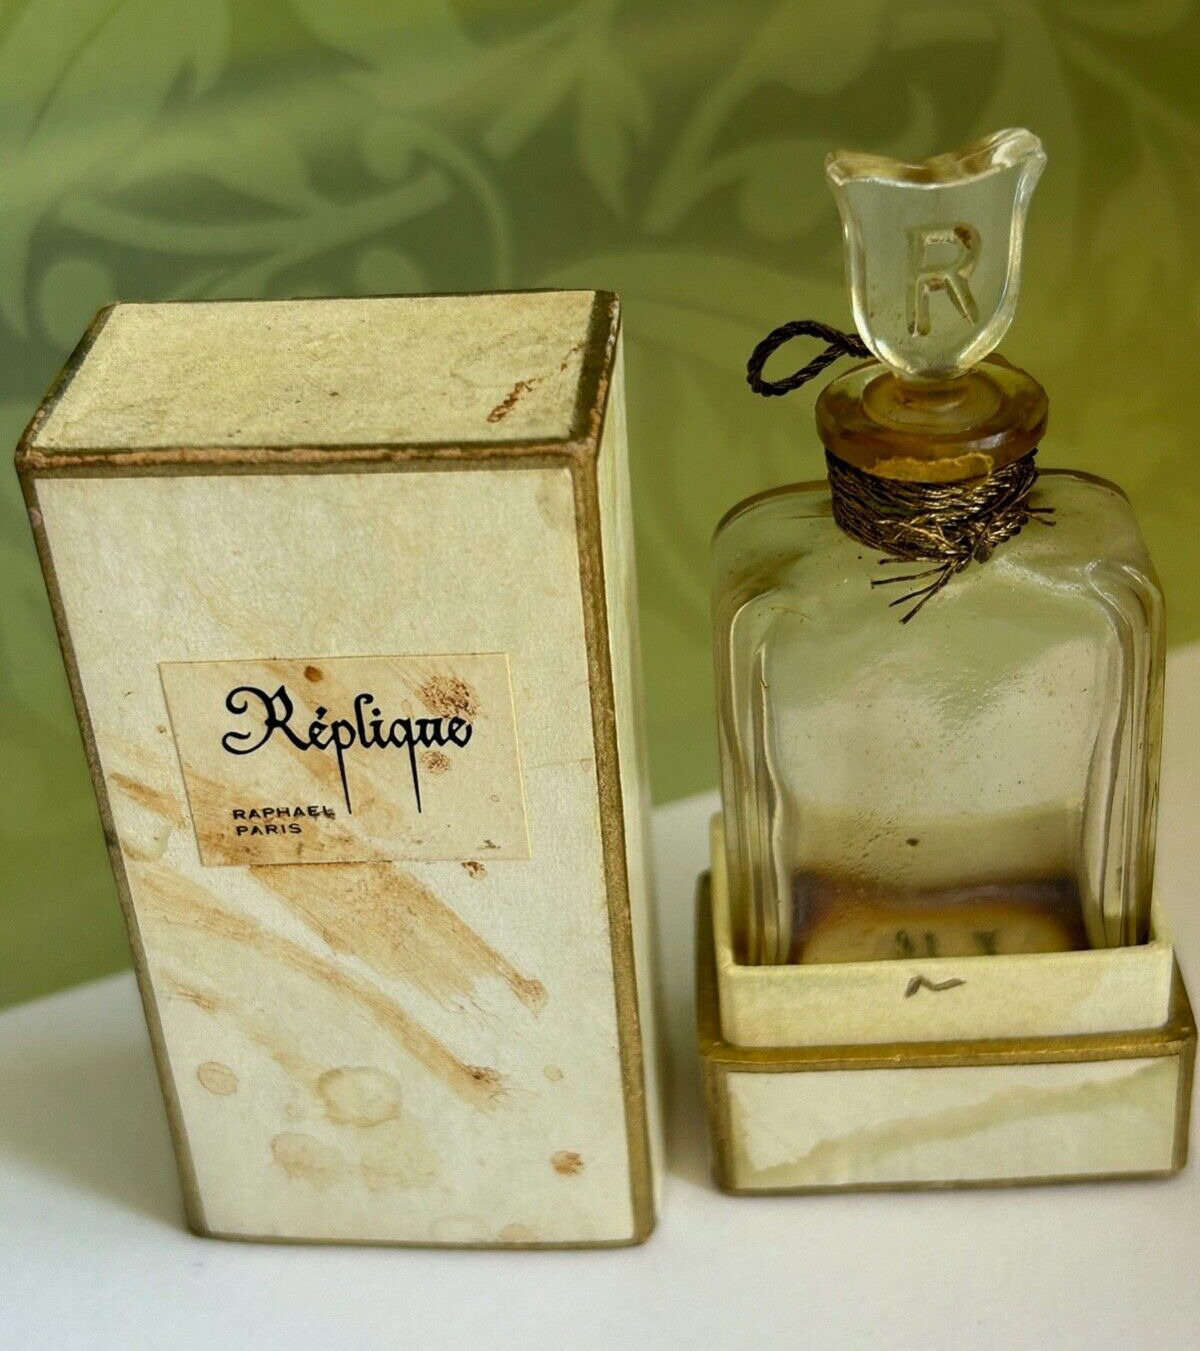 vtg Replique Raphael Paris Eau De Parfum antique .5 oz glass perfume bottle box